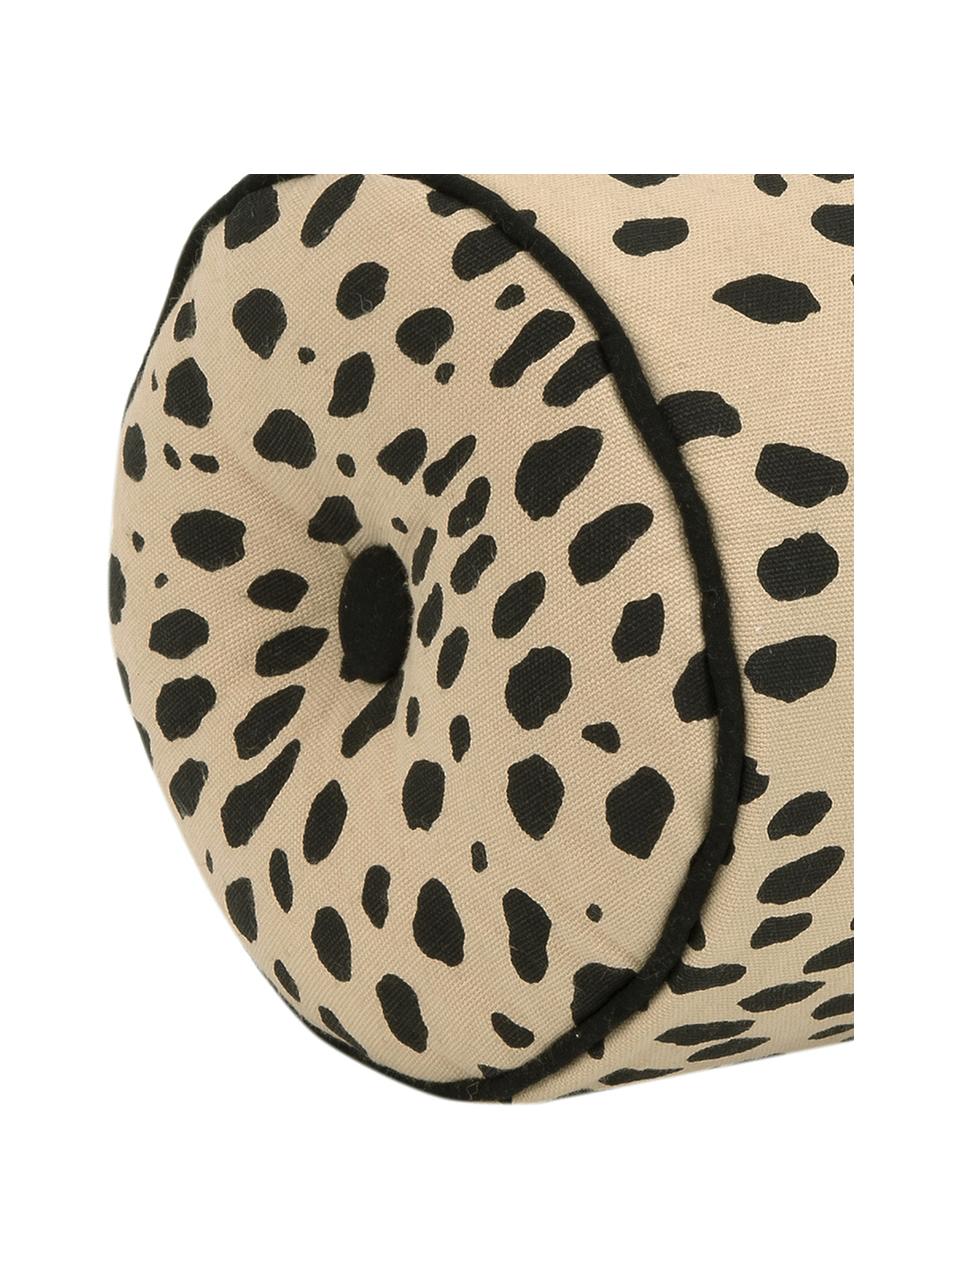 Cojín rulo Leopard, con relleno, Algodón, Rulo: beige, negro Ribete: negro, Ø 18 x L 50 cm